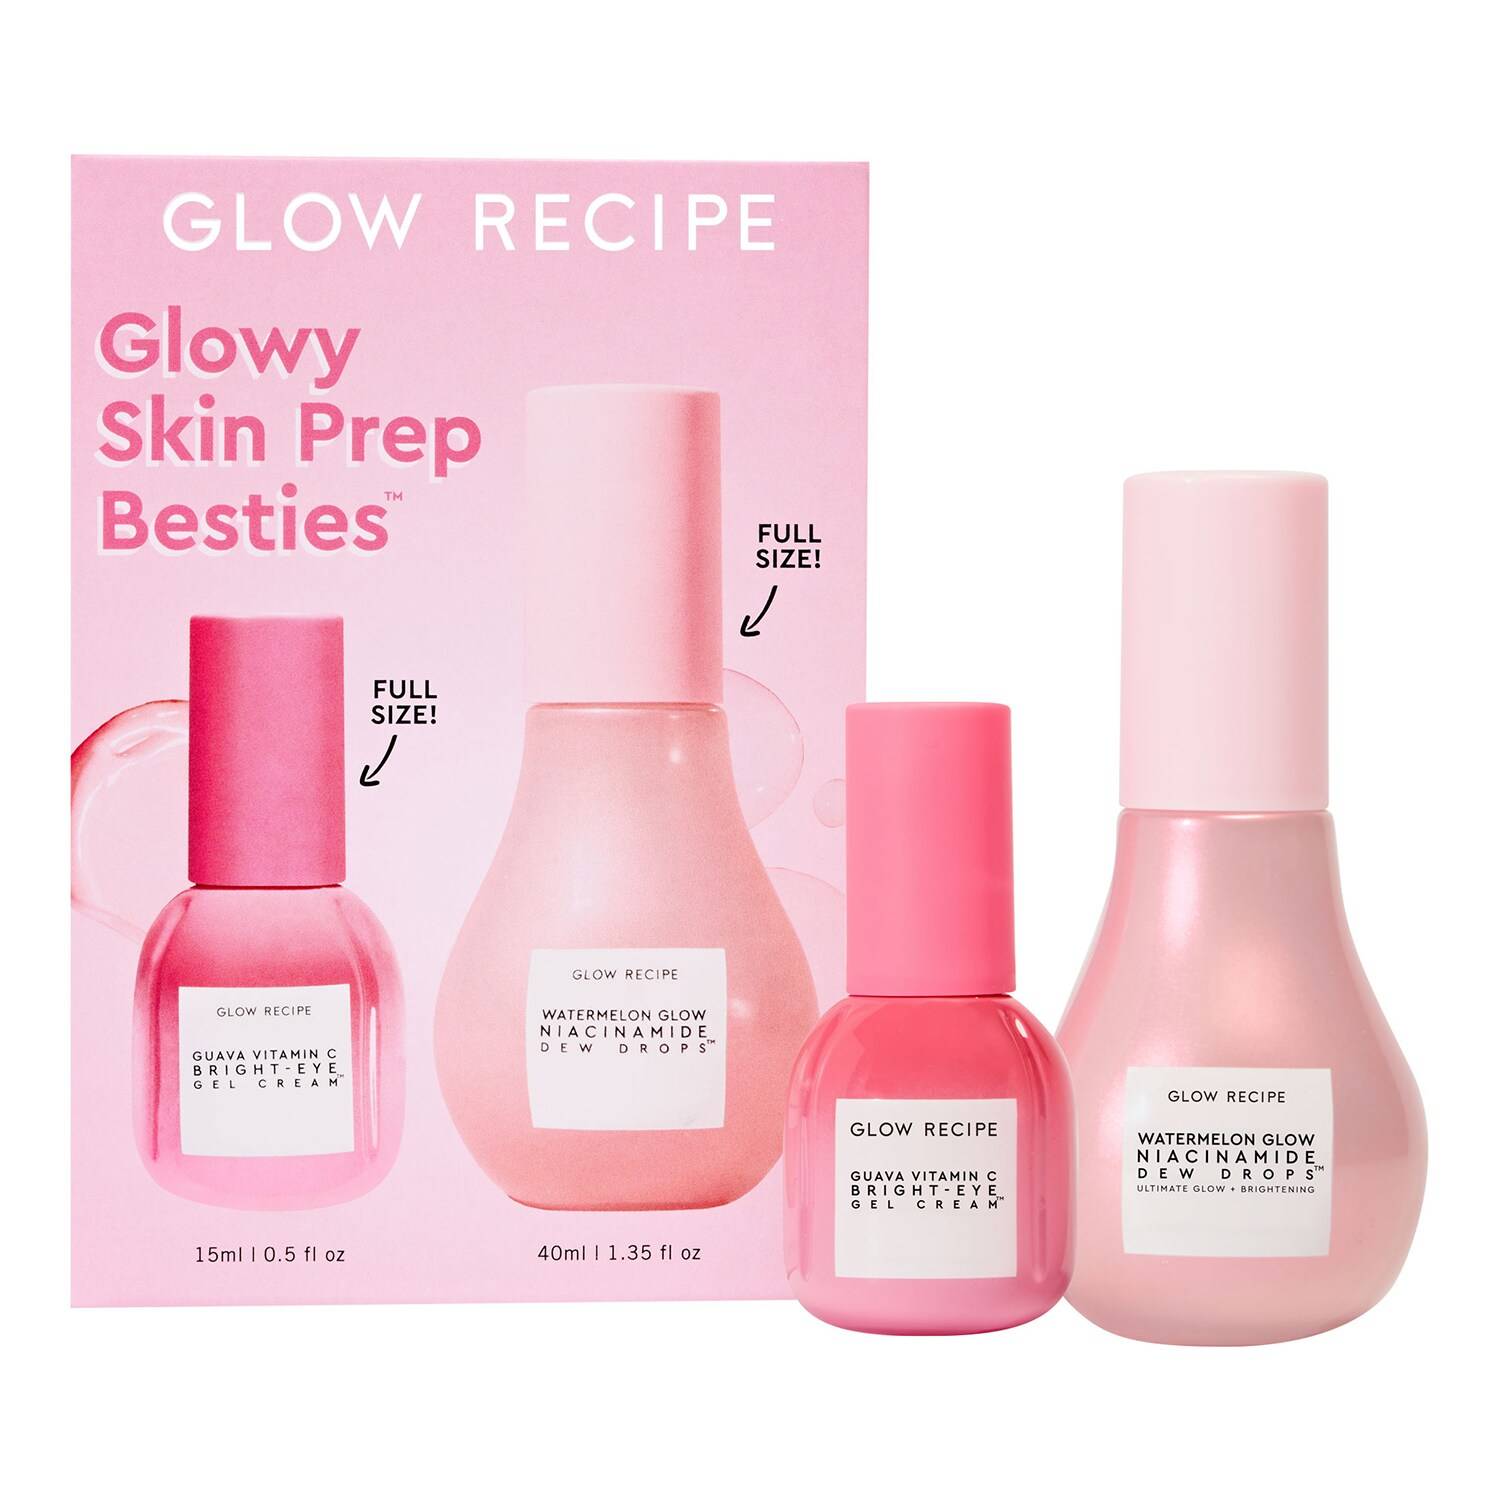 GLOW RECIPE Glowy Skin Prep Besties Kit